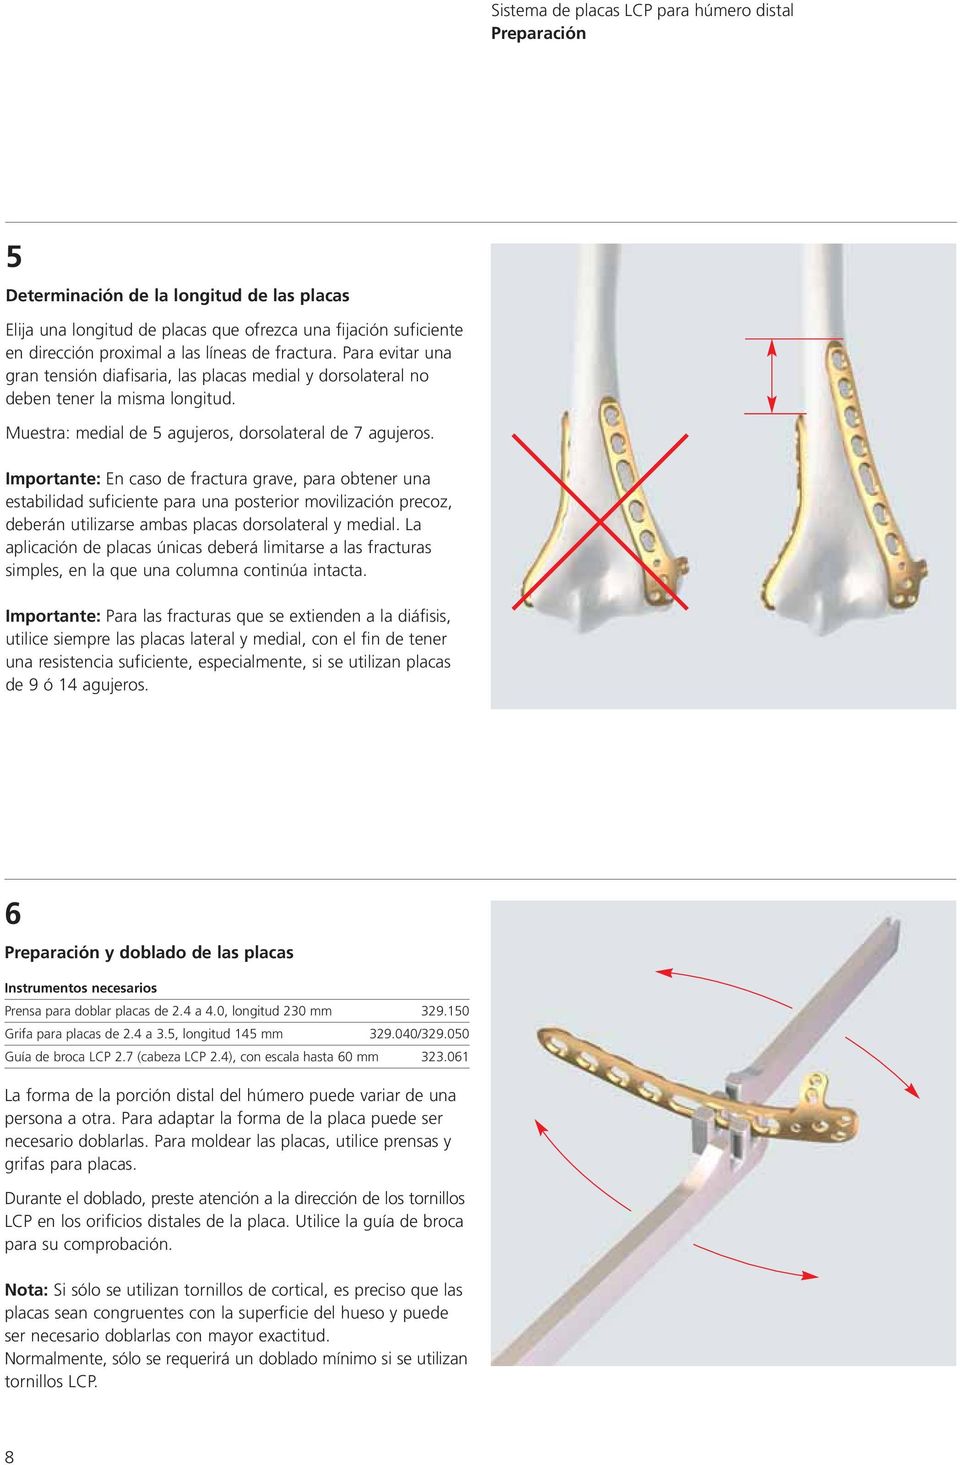 Importante: En caso de fractura grave, para obtener una estabilidad suficiente para una posterior movilización precoz, deberán utilizarse ambas placas dorsolateral y medial.